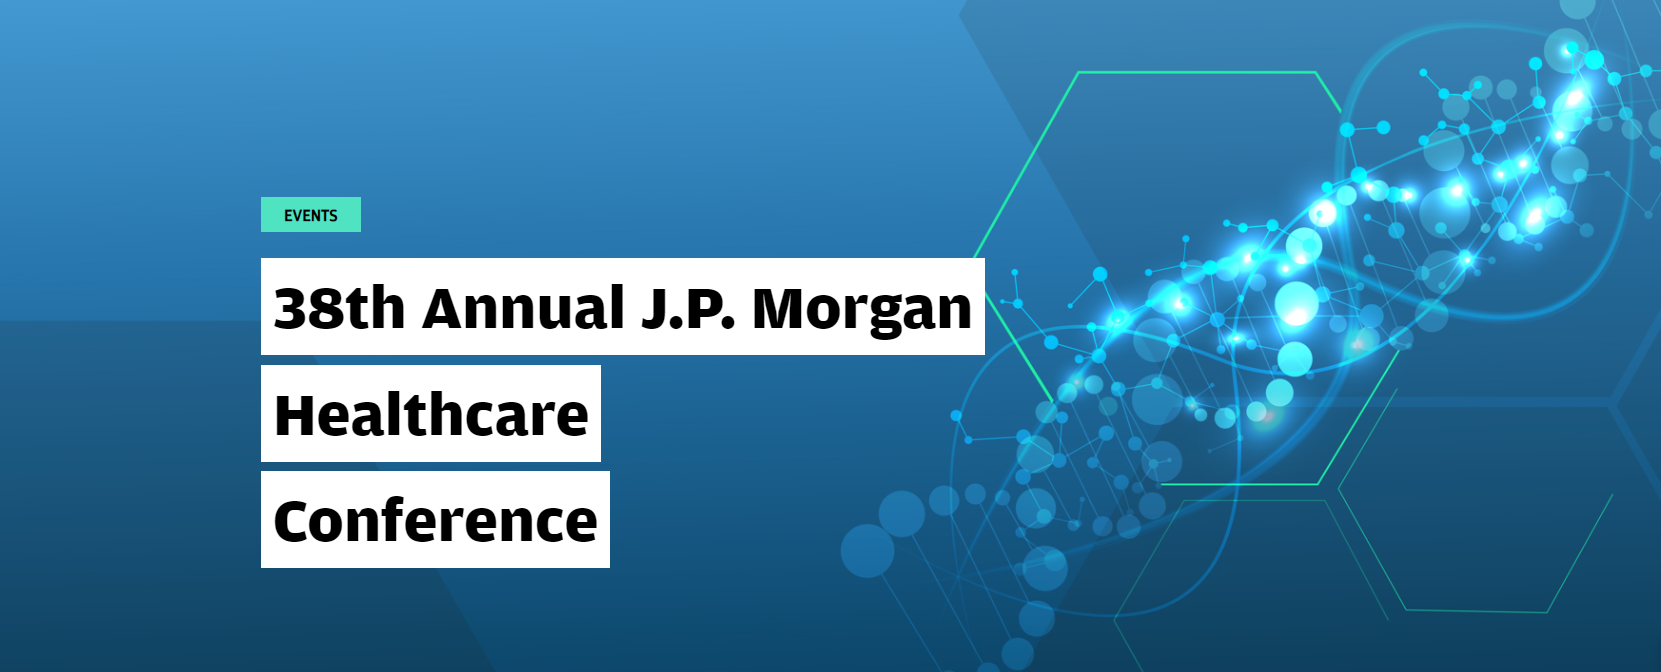 JP Morgan Healthcare Conference e1623370586220